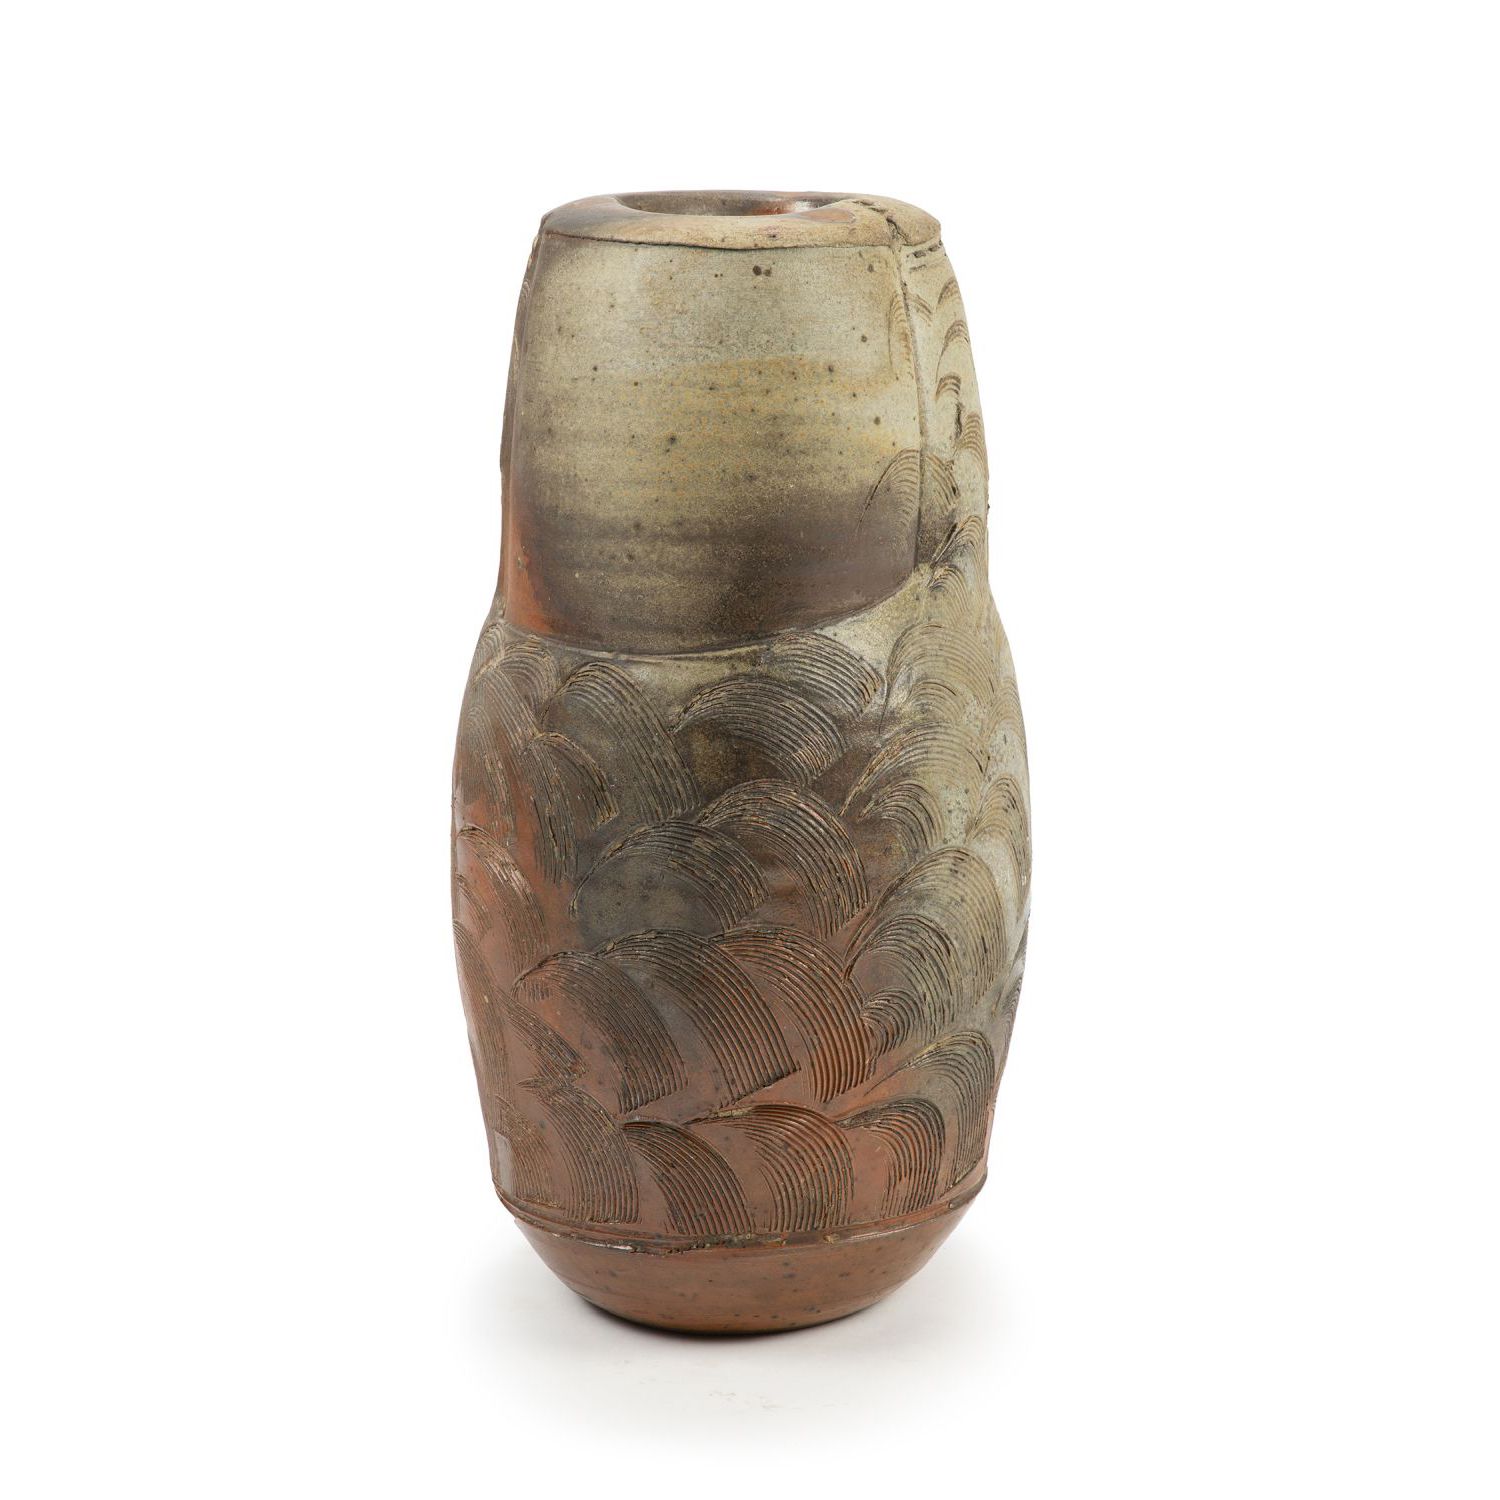 Null 埃里克-阿斯图尔(生于1954年)

炻器卵圆形花瓶，有非洲疤痕装饰，在红棕色背景上施米色和无烟煤釉。刻印签名，日期为93年。

一个砂岩花瓶，非洲疤&hellip;